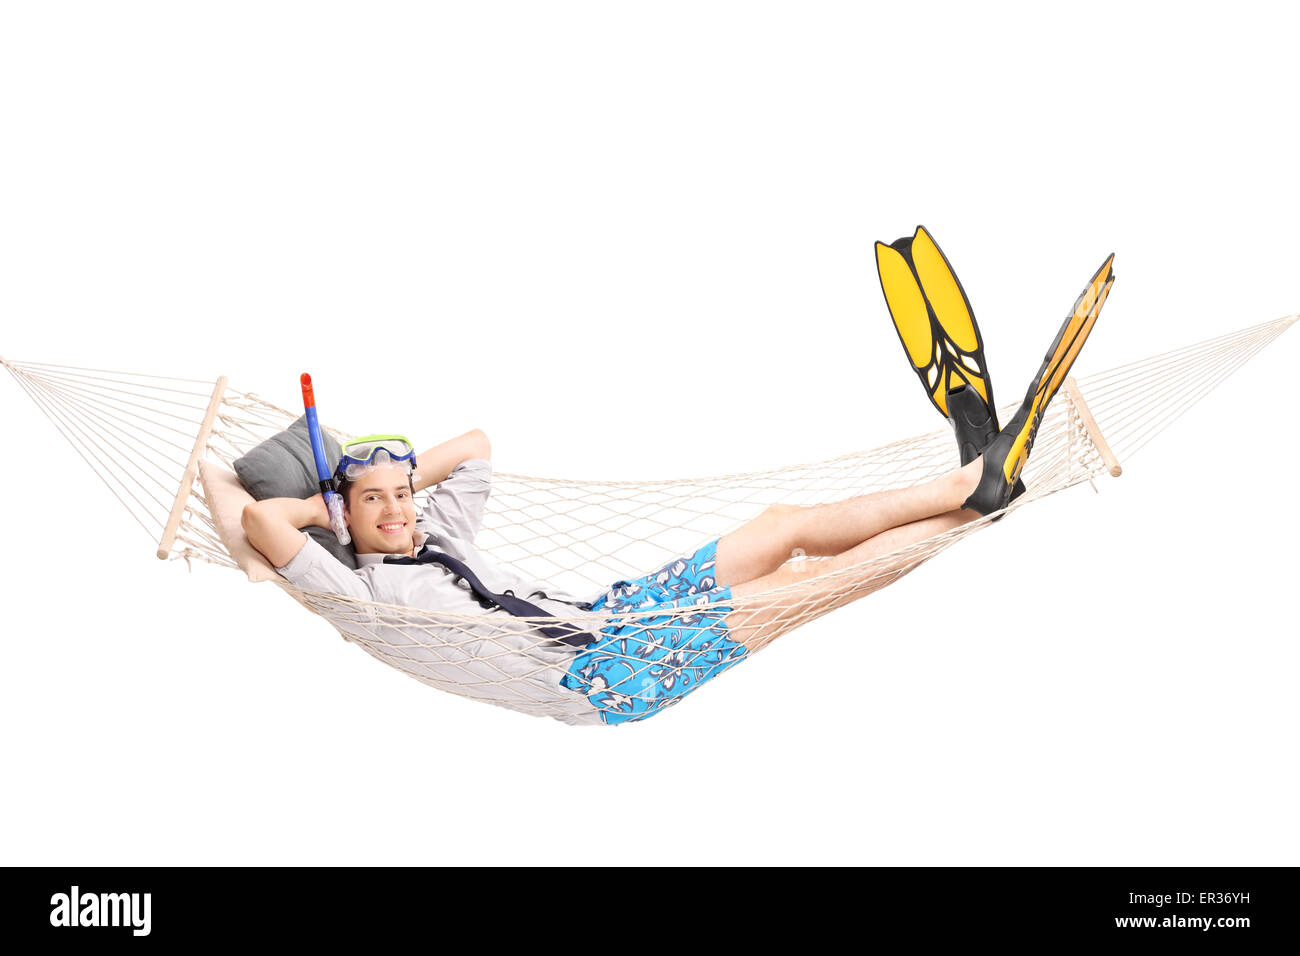 Jeune homme joyeux avec l'équipement de plongée couché dans un hamac et regardant la caméra isolé sur fond blanc Banque D'Images